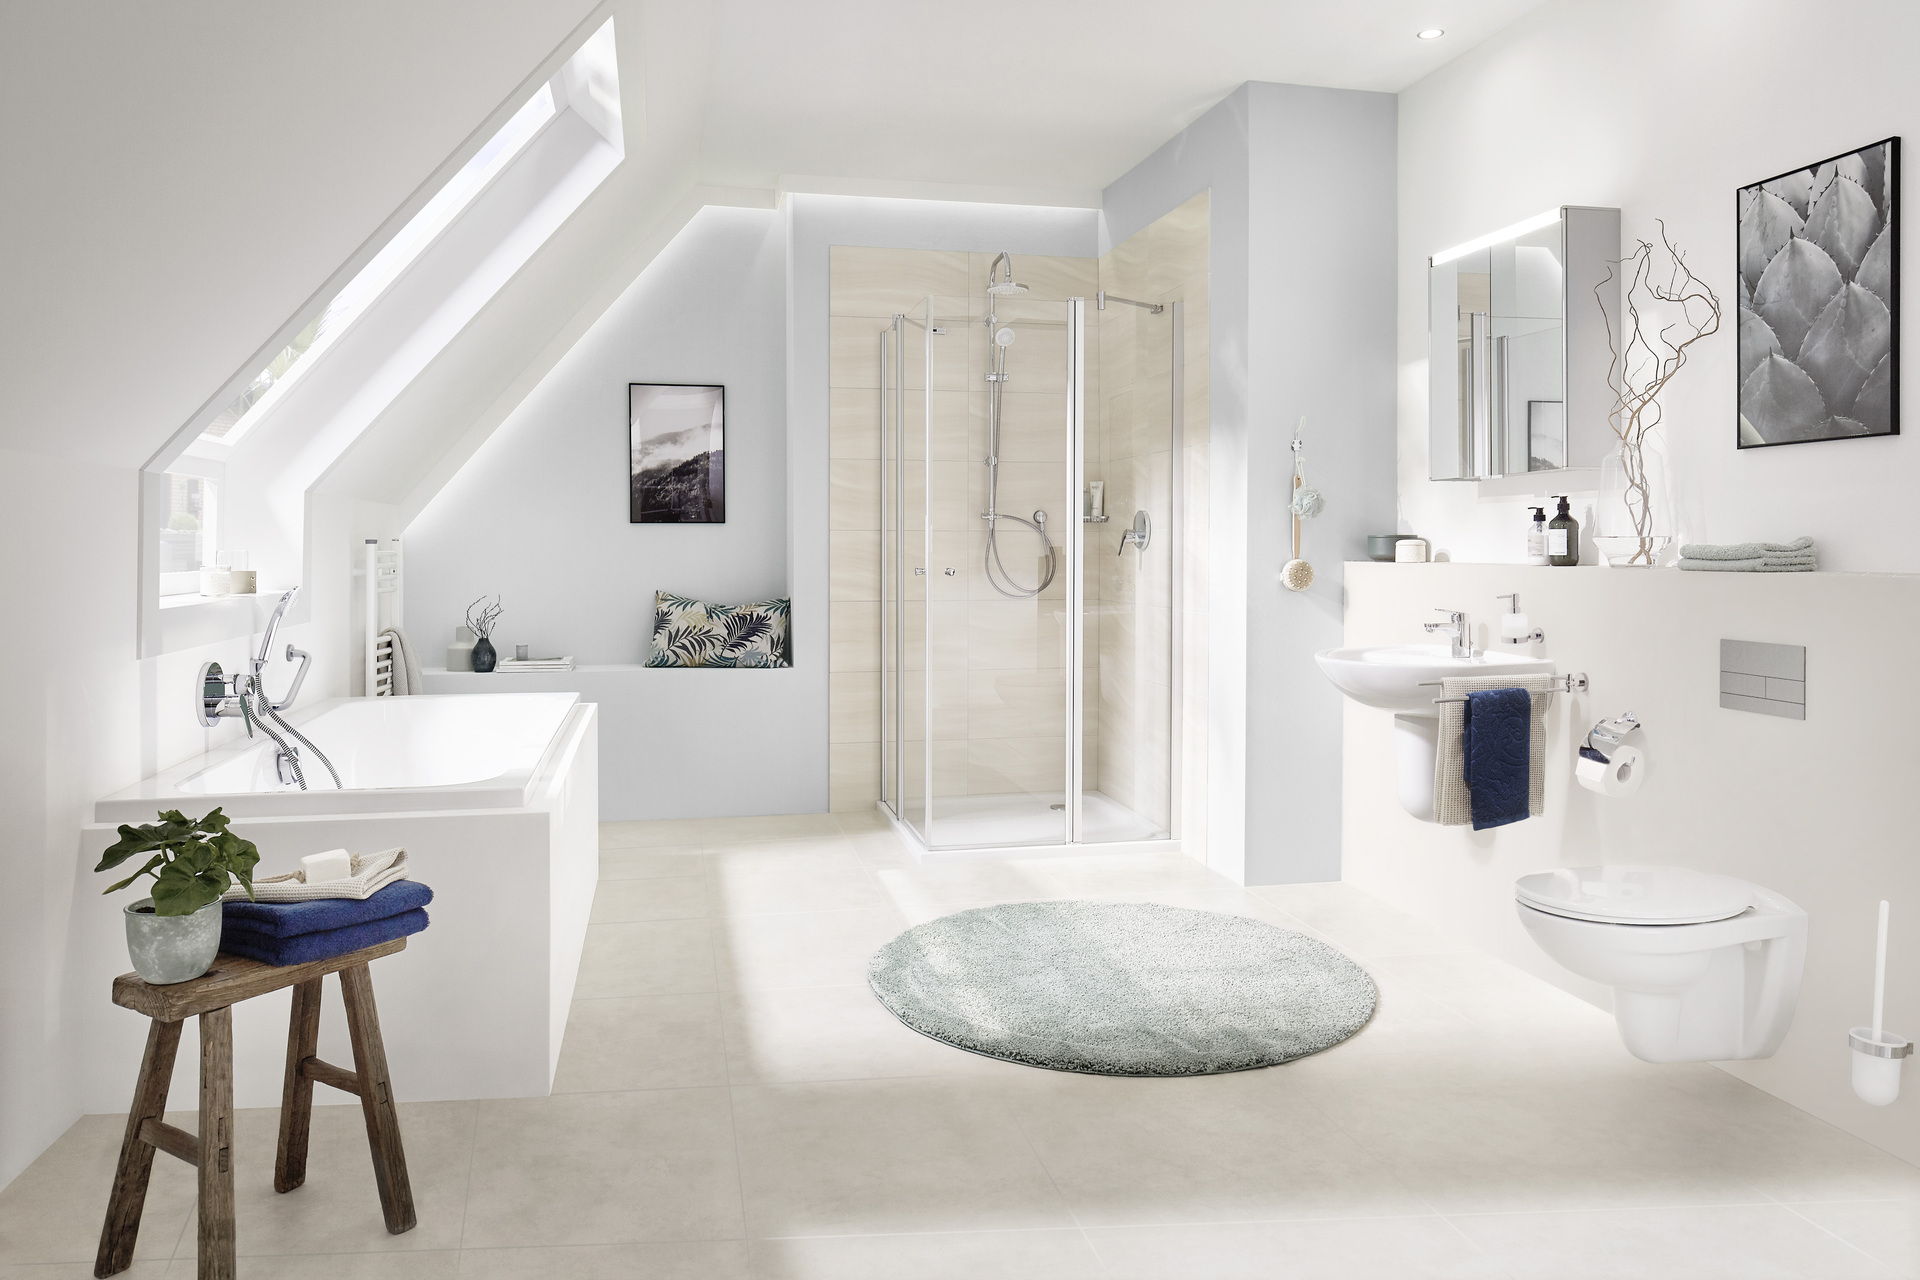 Das Bild zeigt ein Badezimmer mit Dachschräge der Marke SANIBEL. Die Keramik ist in weiß gehalten, es ist eine Badewanne und eine Dusche mit einer Duschabtrennung und ein Waschtisch ohne Waschtischunterschrank zu sehen.